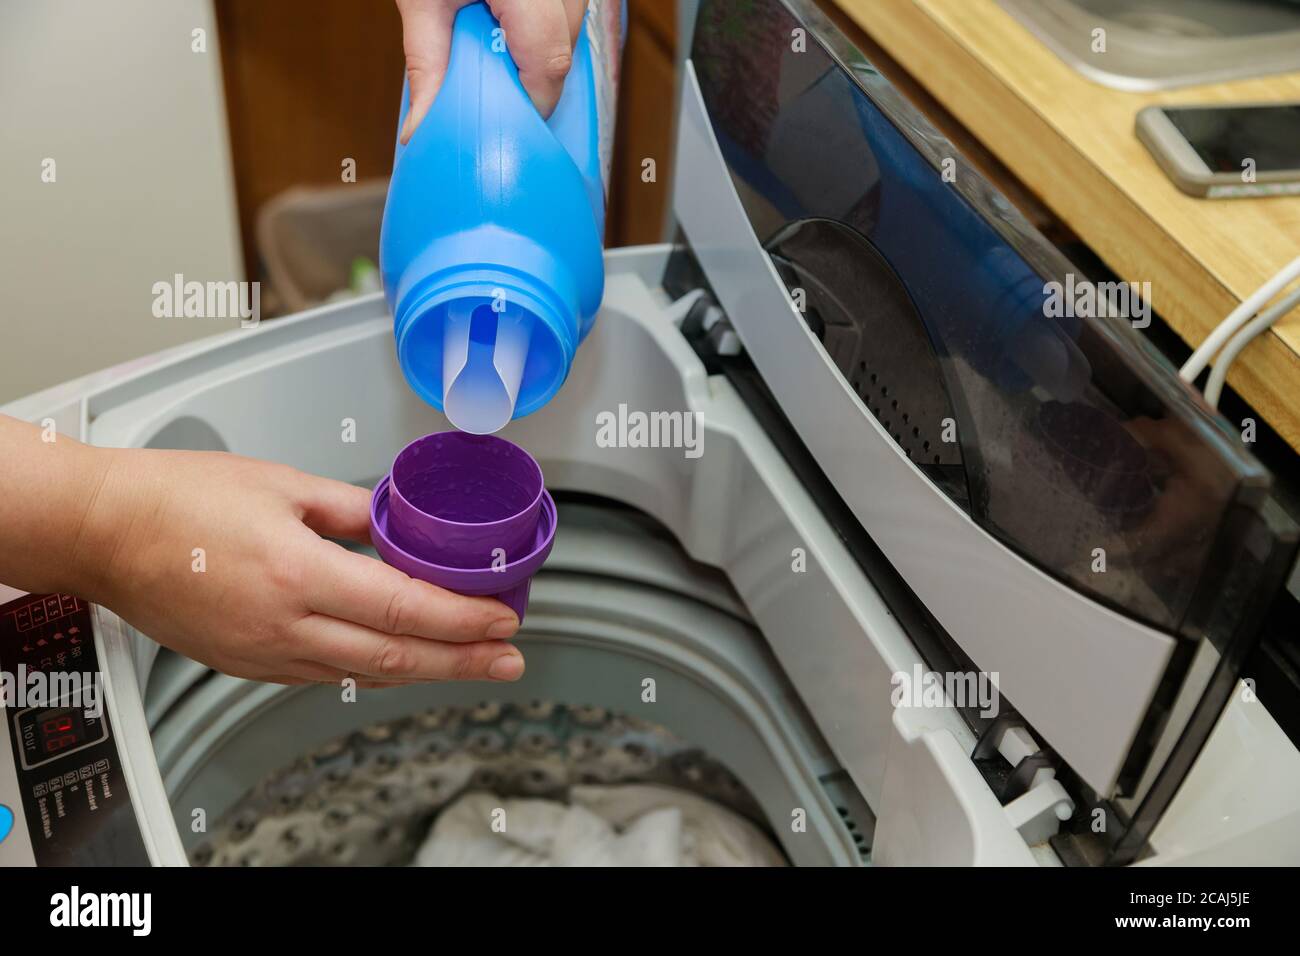 Порошок в барабан стиральной машины можно ли. Контейнер для жидкого порошка в стиральную машину. Ванночка для жидкого порошка в стиральную машину. Капсула для жидкого порошка в стиральную машину. Форма для жидкого порошка стиральная машина.